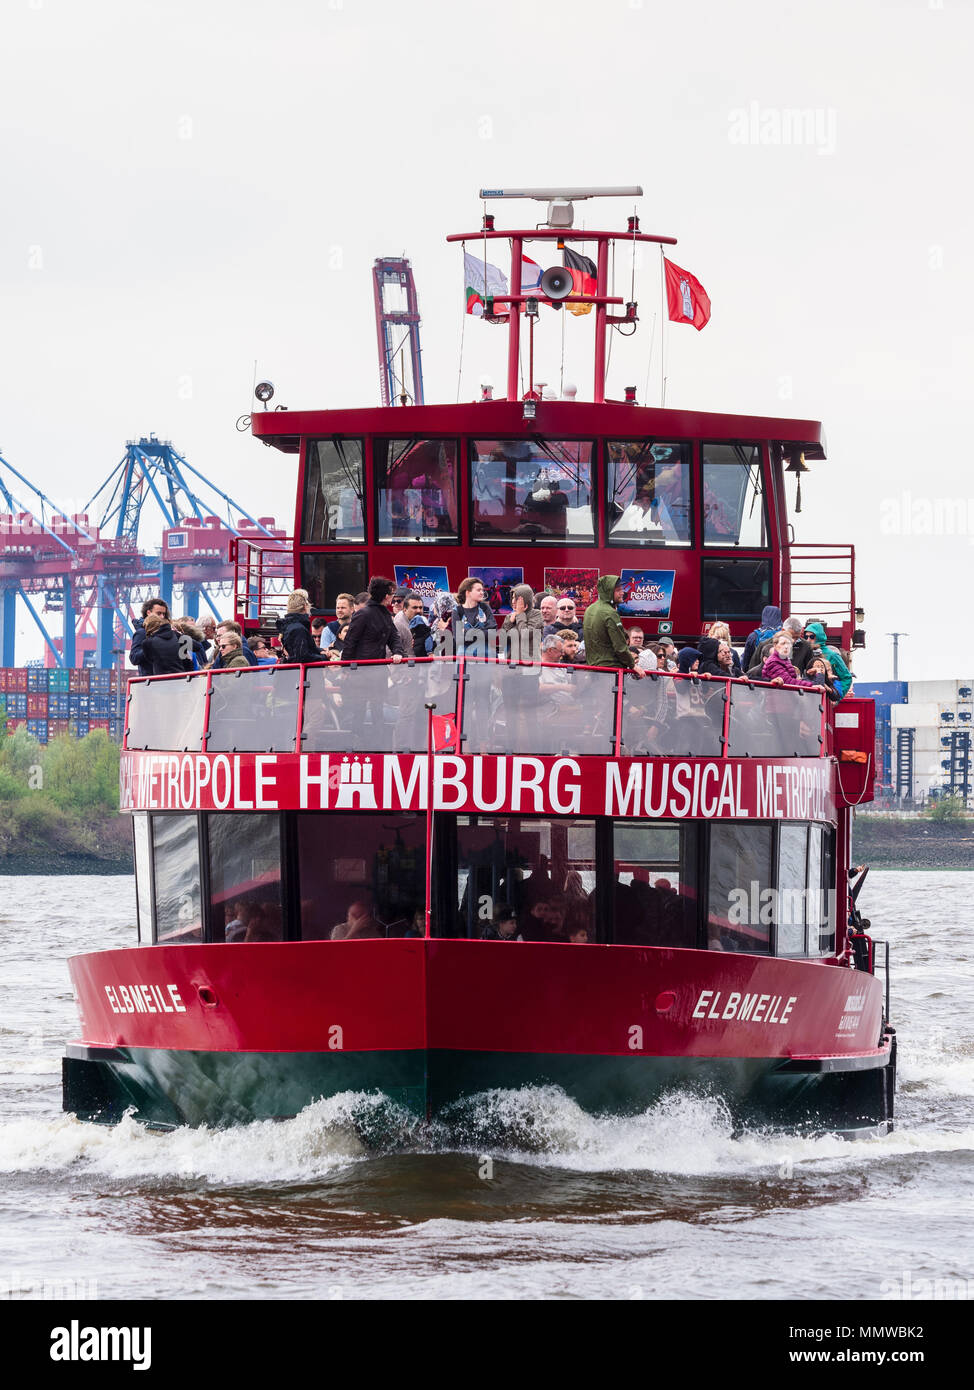 Amburgo in traghetto sul Fiume - uno dei regolari di traghetti fluviali sul fiume Elba lo spostamento dei passeggeri tra parti del porto. Foto Stock